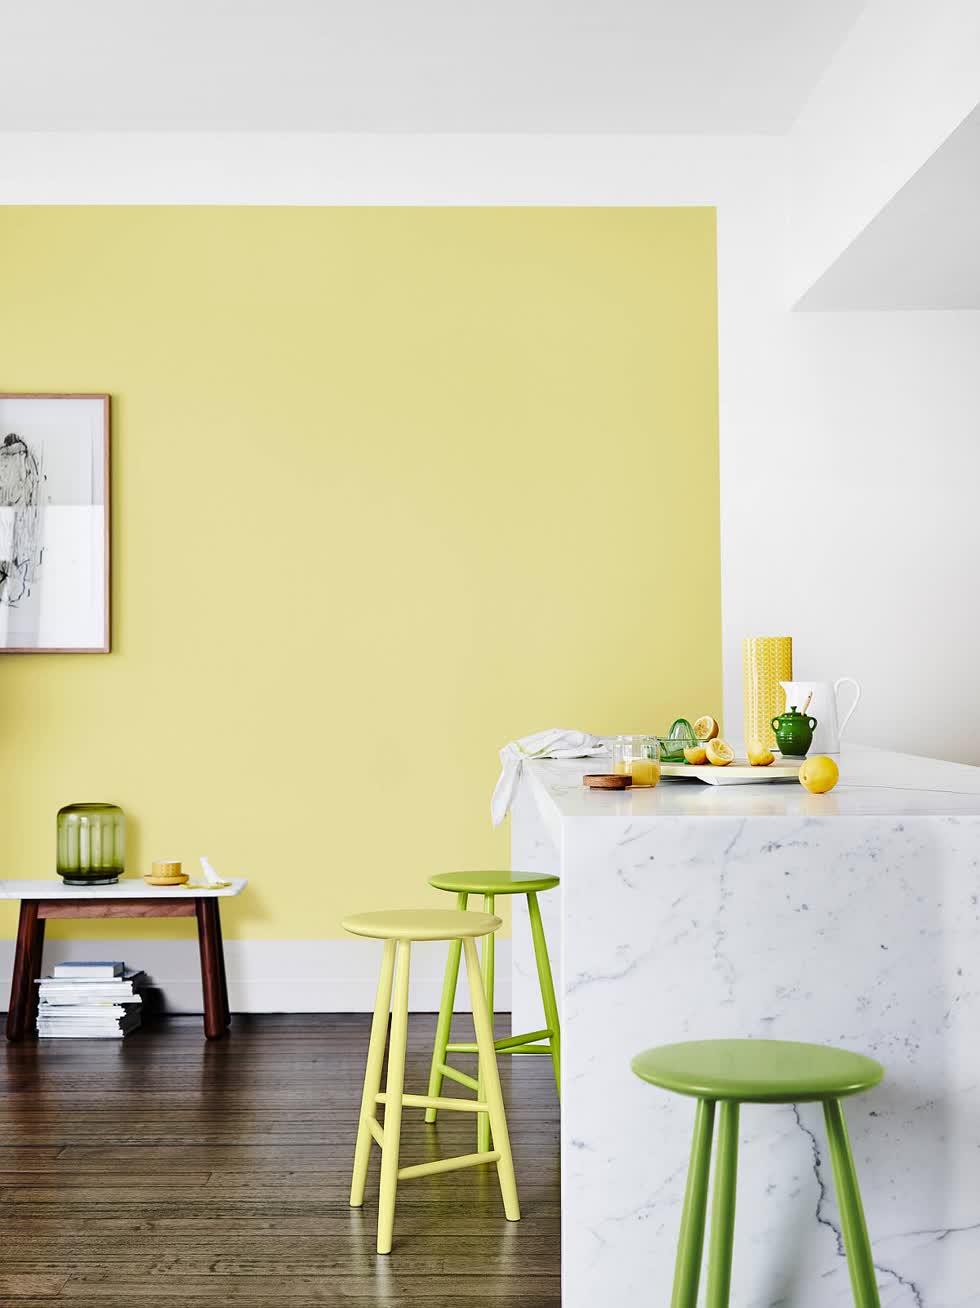 Tạo sự kết hợp của riêng bạn giữa màu vàng và màu xanh lá cây trong nhà bếp hiện đạị.